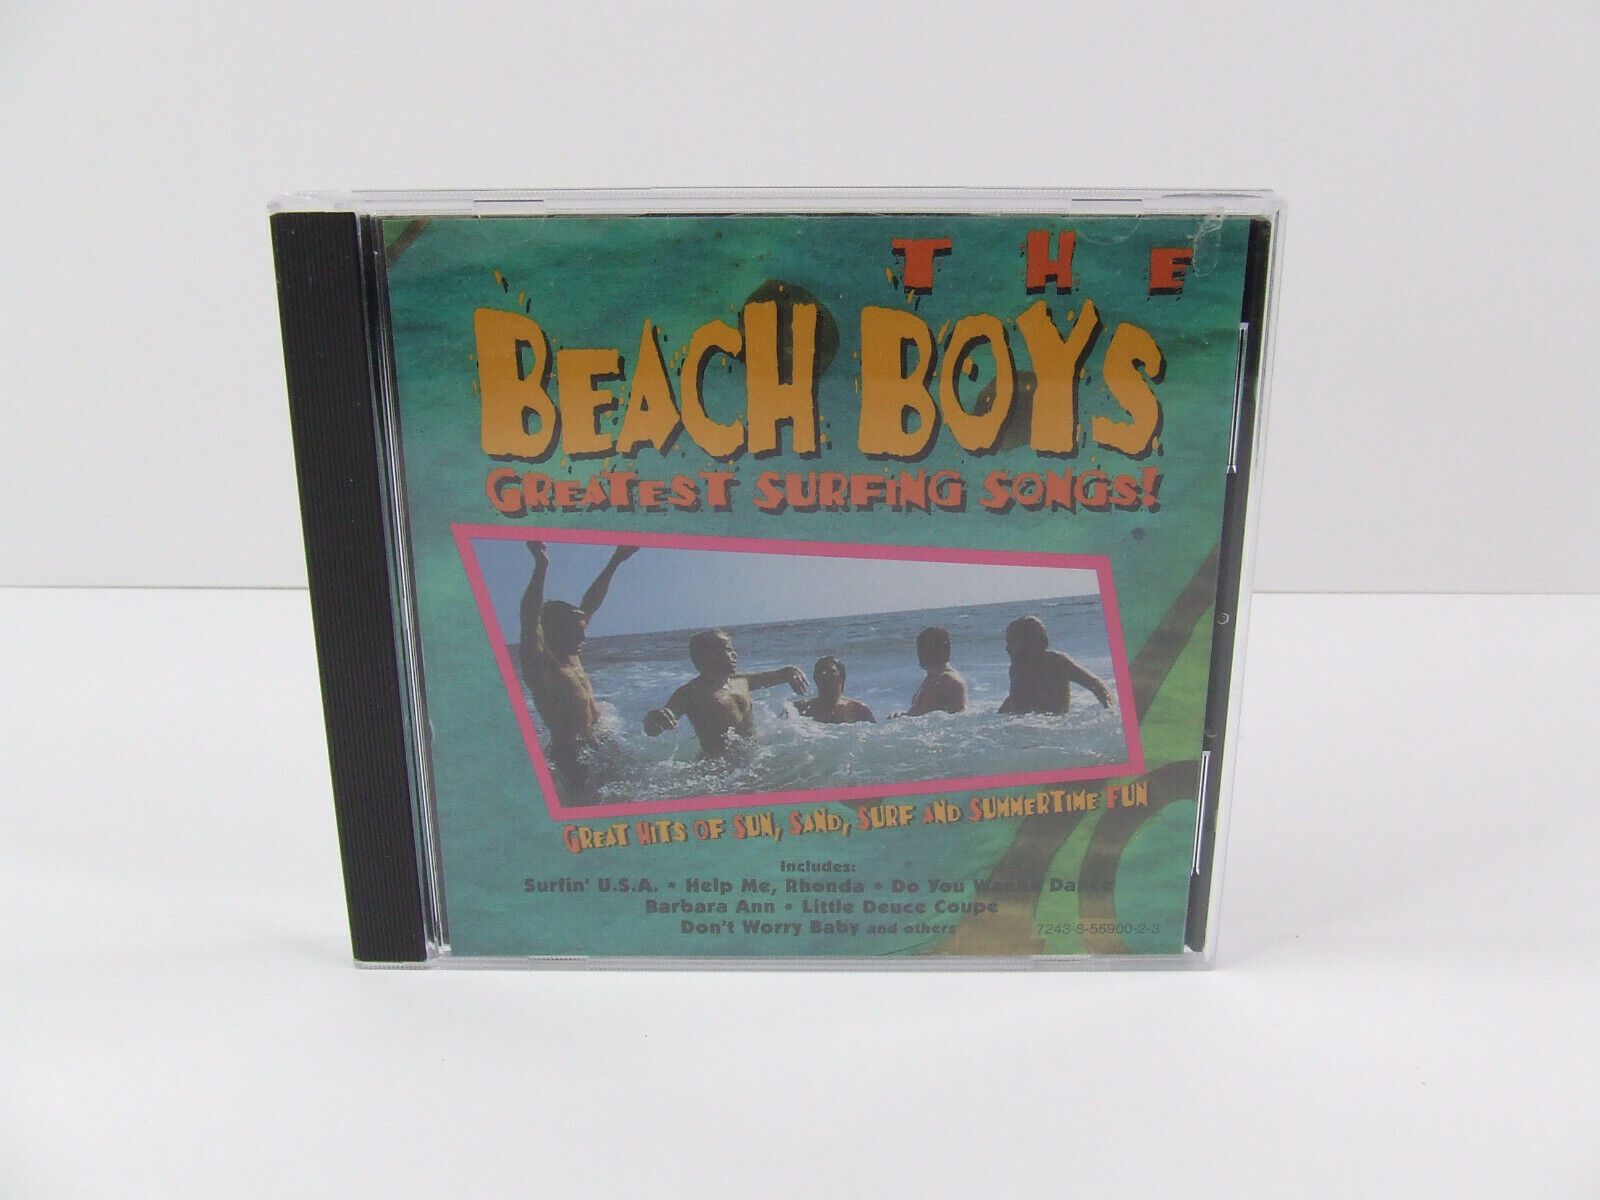 The Beach Boys - Greatest Surfing Songs (CD, 1990 CEMA) Brian Wilson